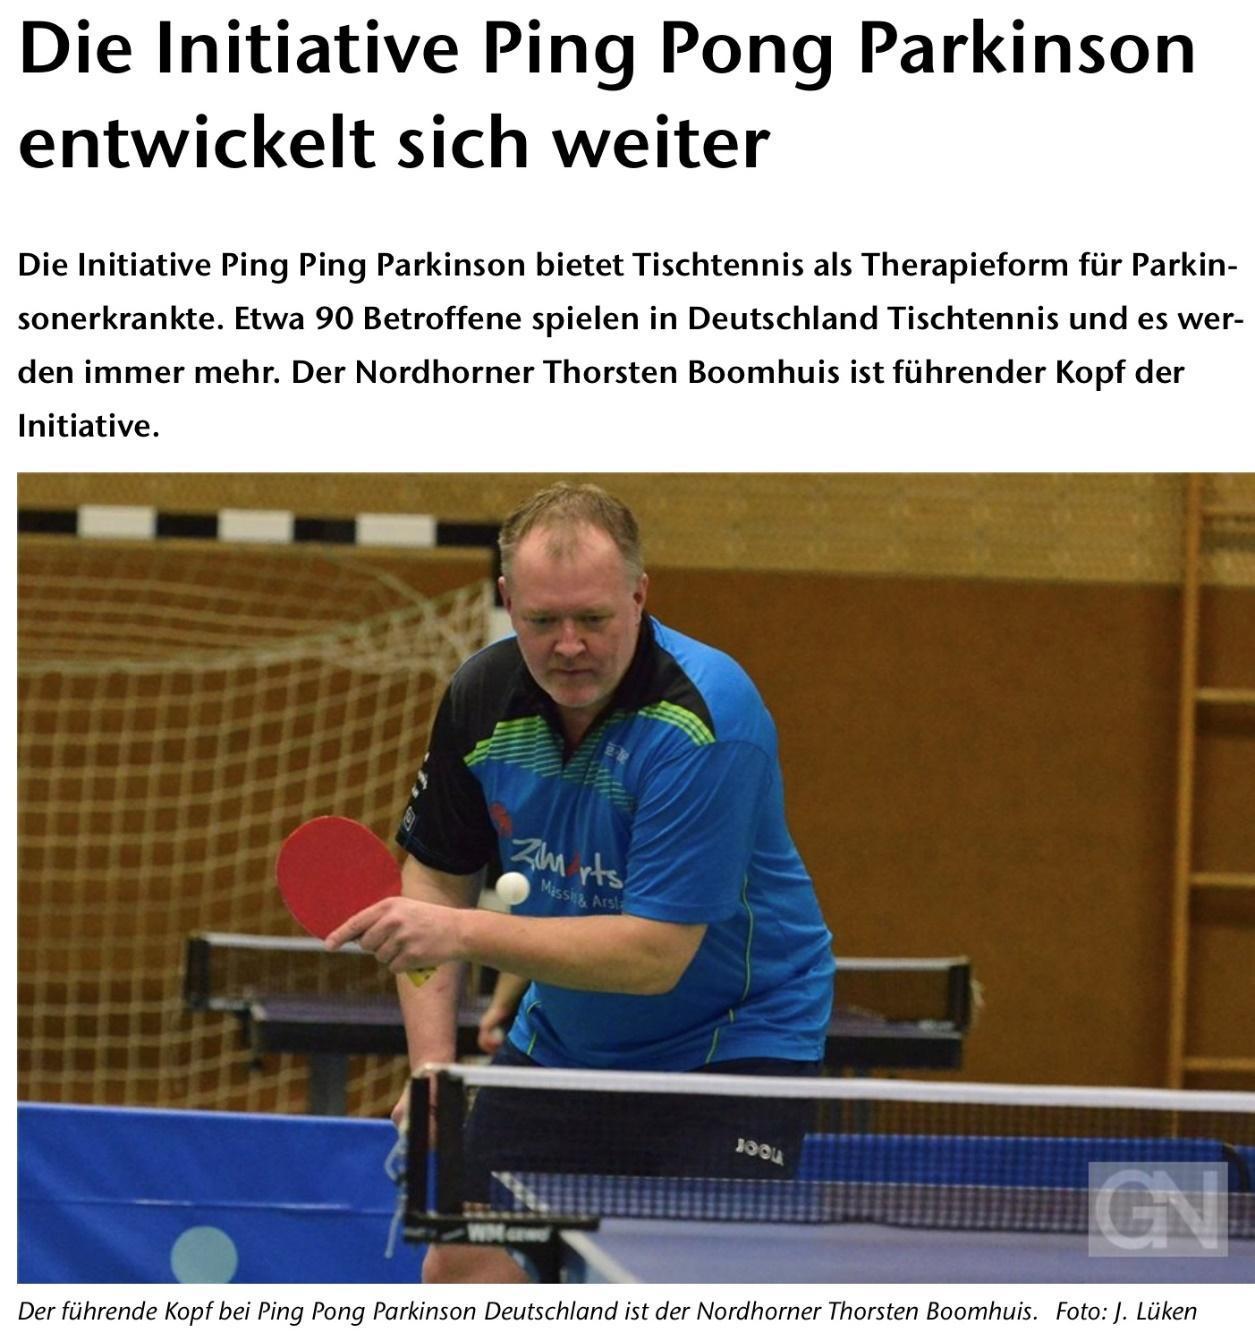 Die Initiative Ping Pong Parkinson entwickelt sich weiter